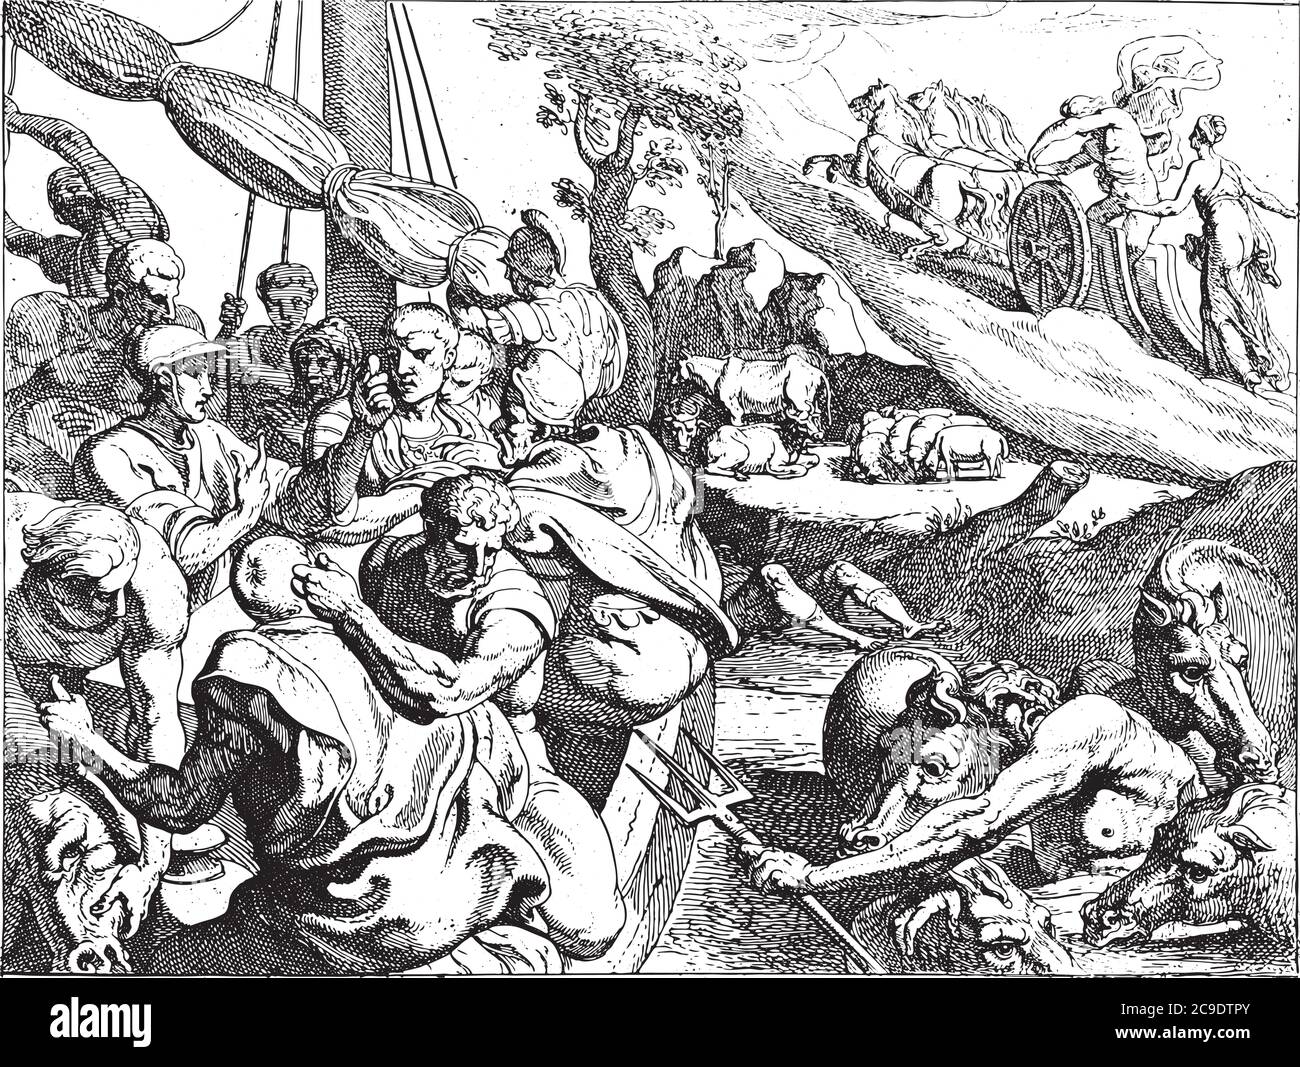 Bestiame di Helios, i compagni affamati di Odysseus macello uno dei bovini del dio del sole Helios a bordo, incisione d'annata. Illustrazione Vettoriale